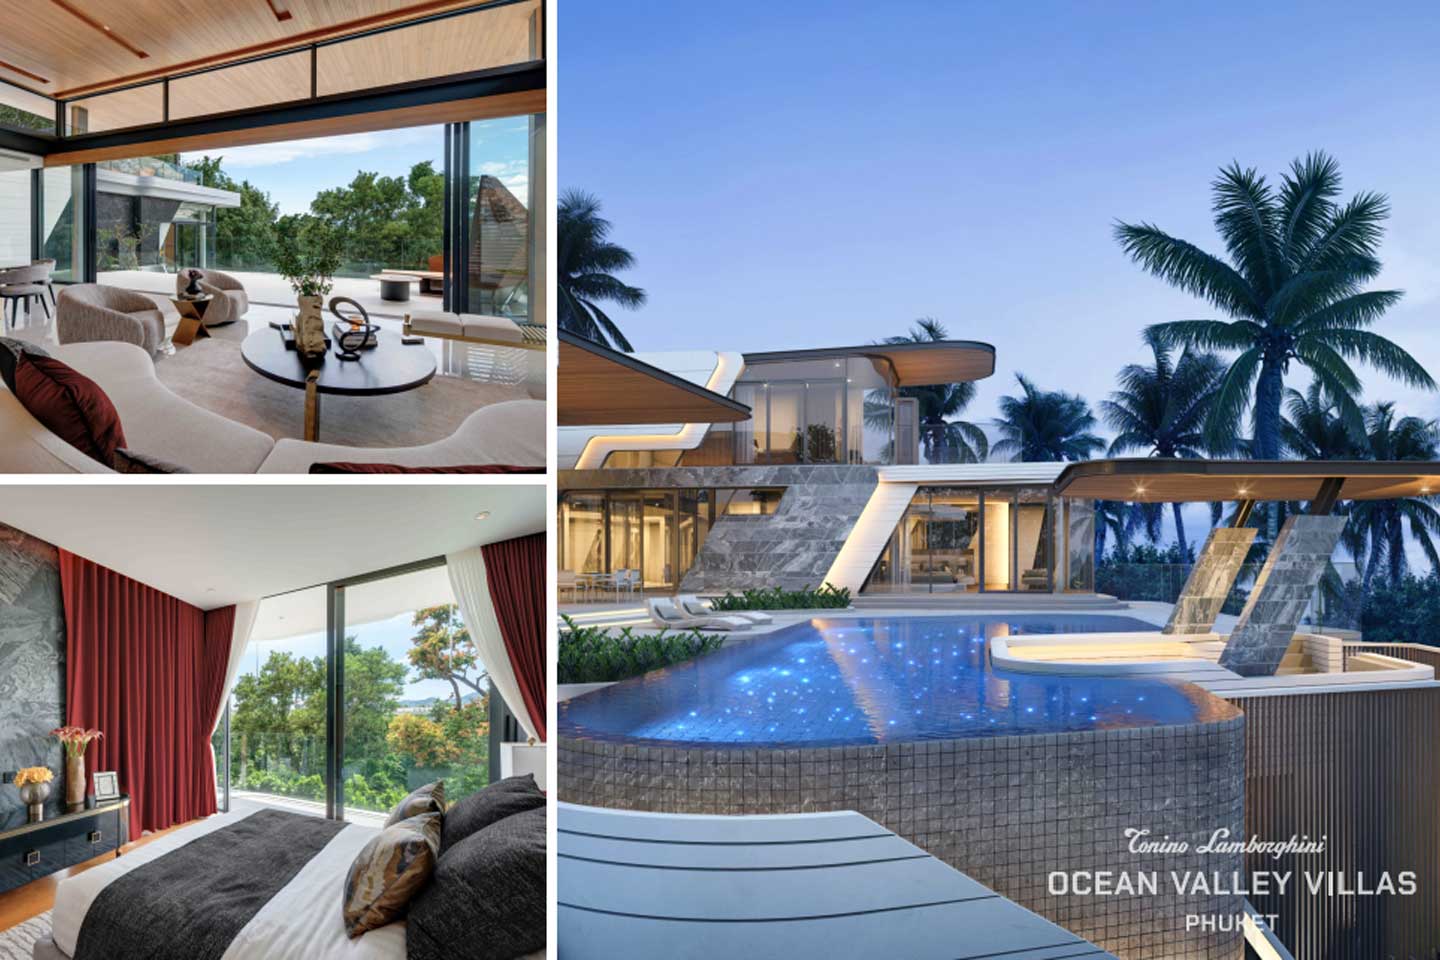 Botanica Ocean Valley villas